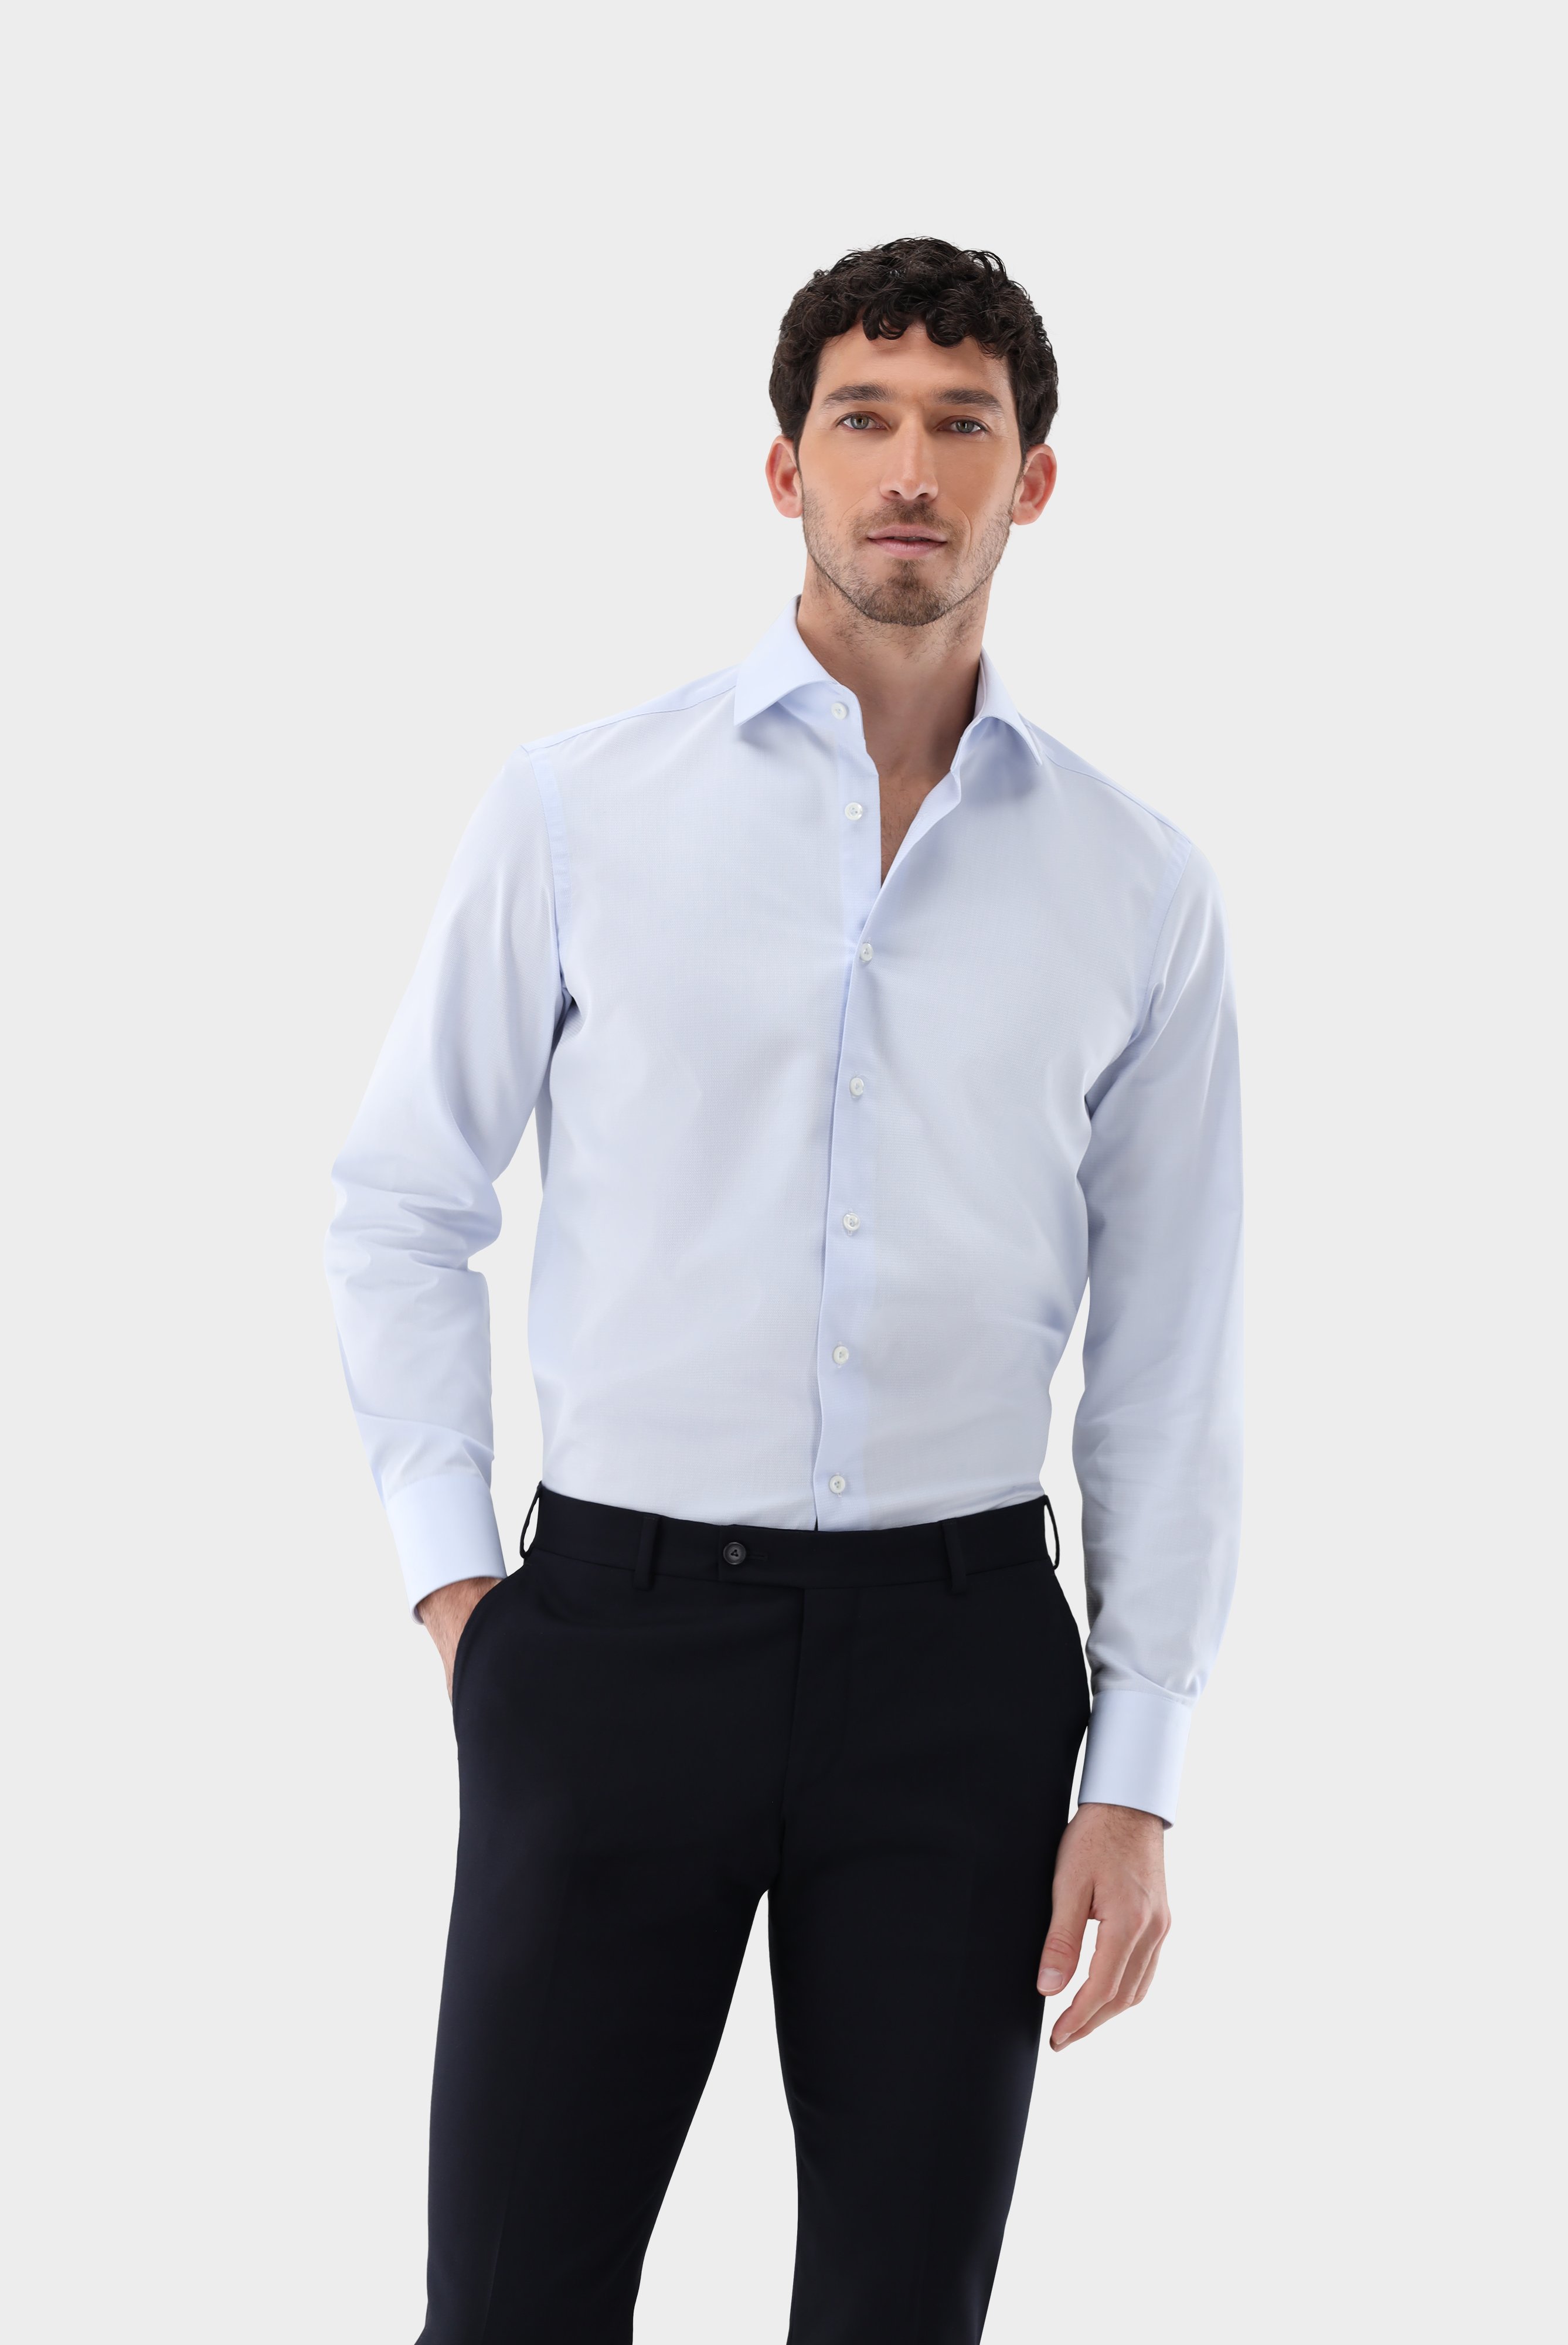 Bügelleichte Hemden+Bügelfreies Twil Hemd mit Struktur Tailor Fit+20.2020.BQ.150301.720.41